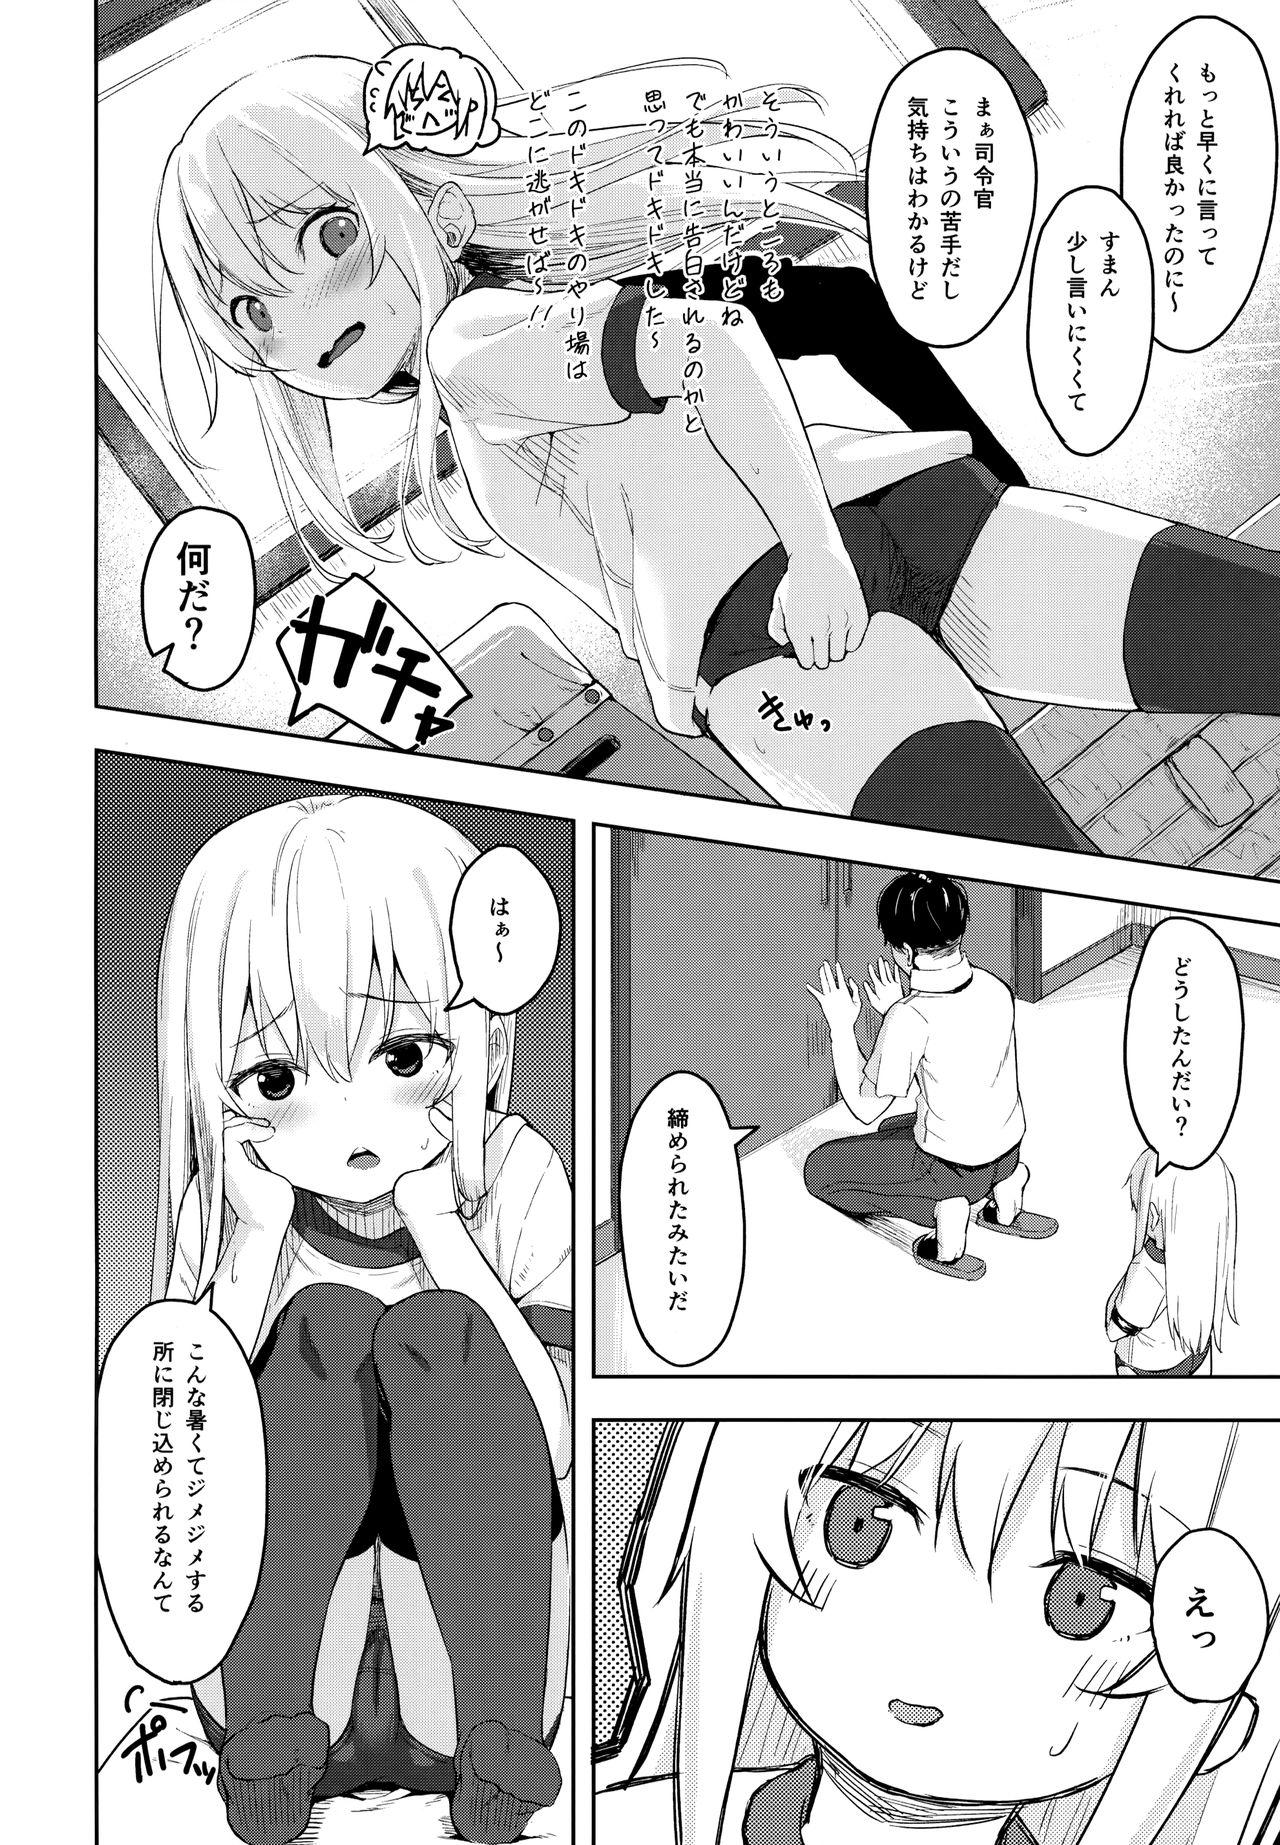 Culonas Hibiki-chan! Otona o Karakatte wa Ikenaindayo? - Kantai collection Fucking Girls - Page 5